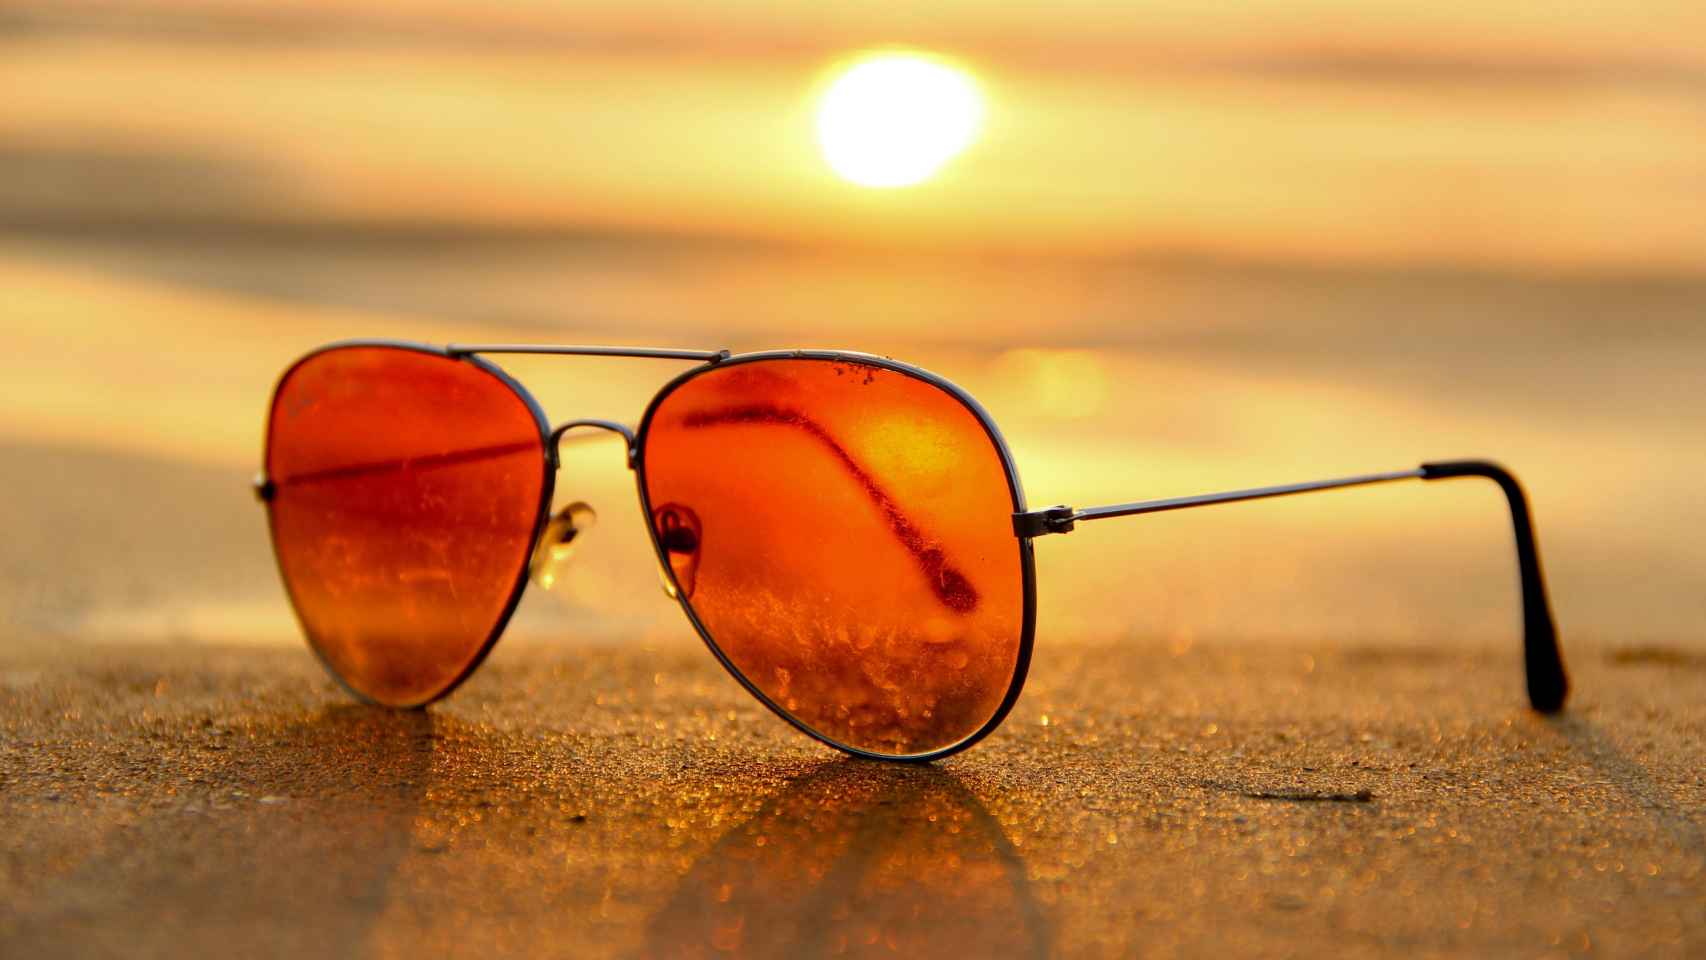 Gafas de sol: qué color de cristal elegir en función de cada ocasión